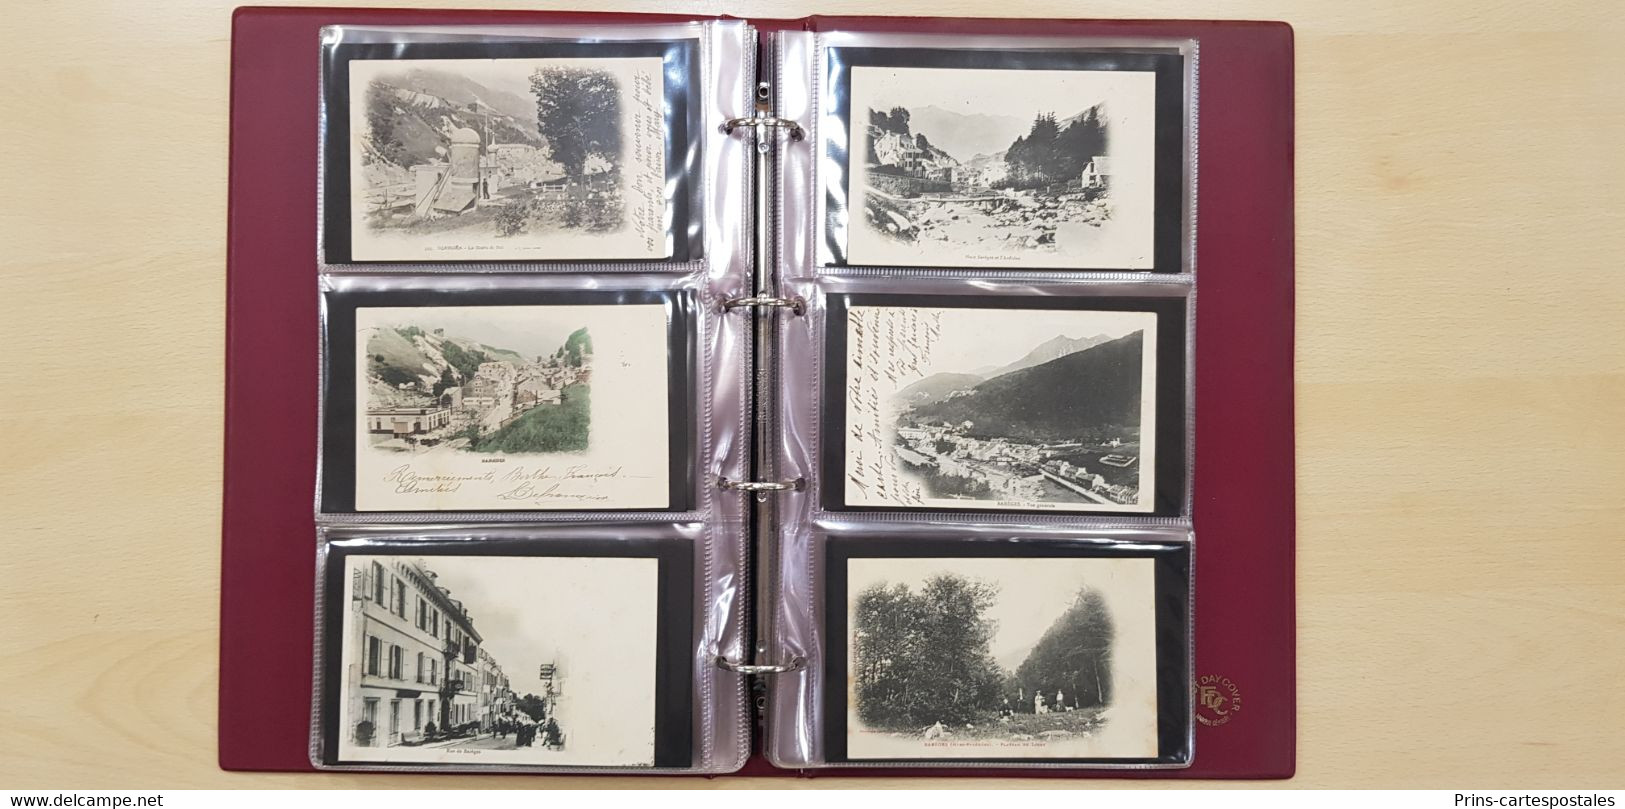 1 Album de Collection de 140 cpa sur la commune de Barèges